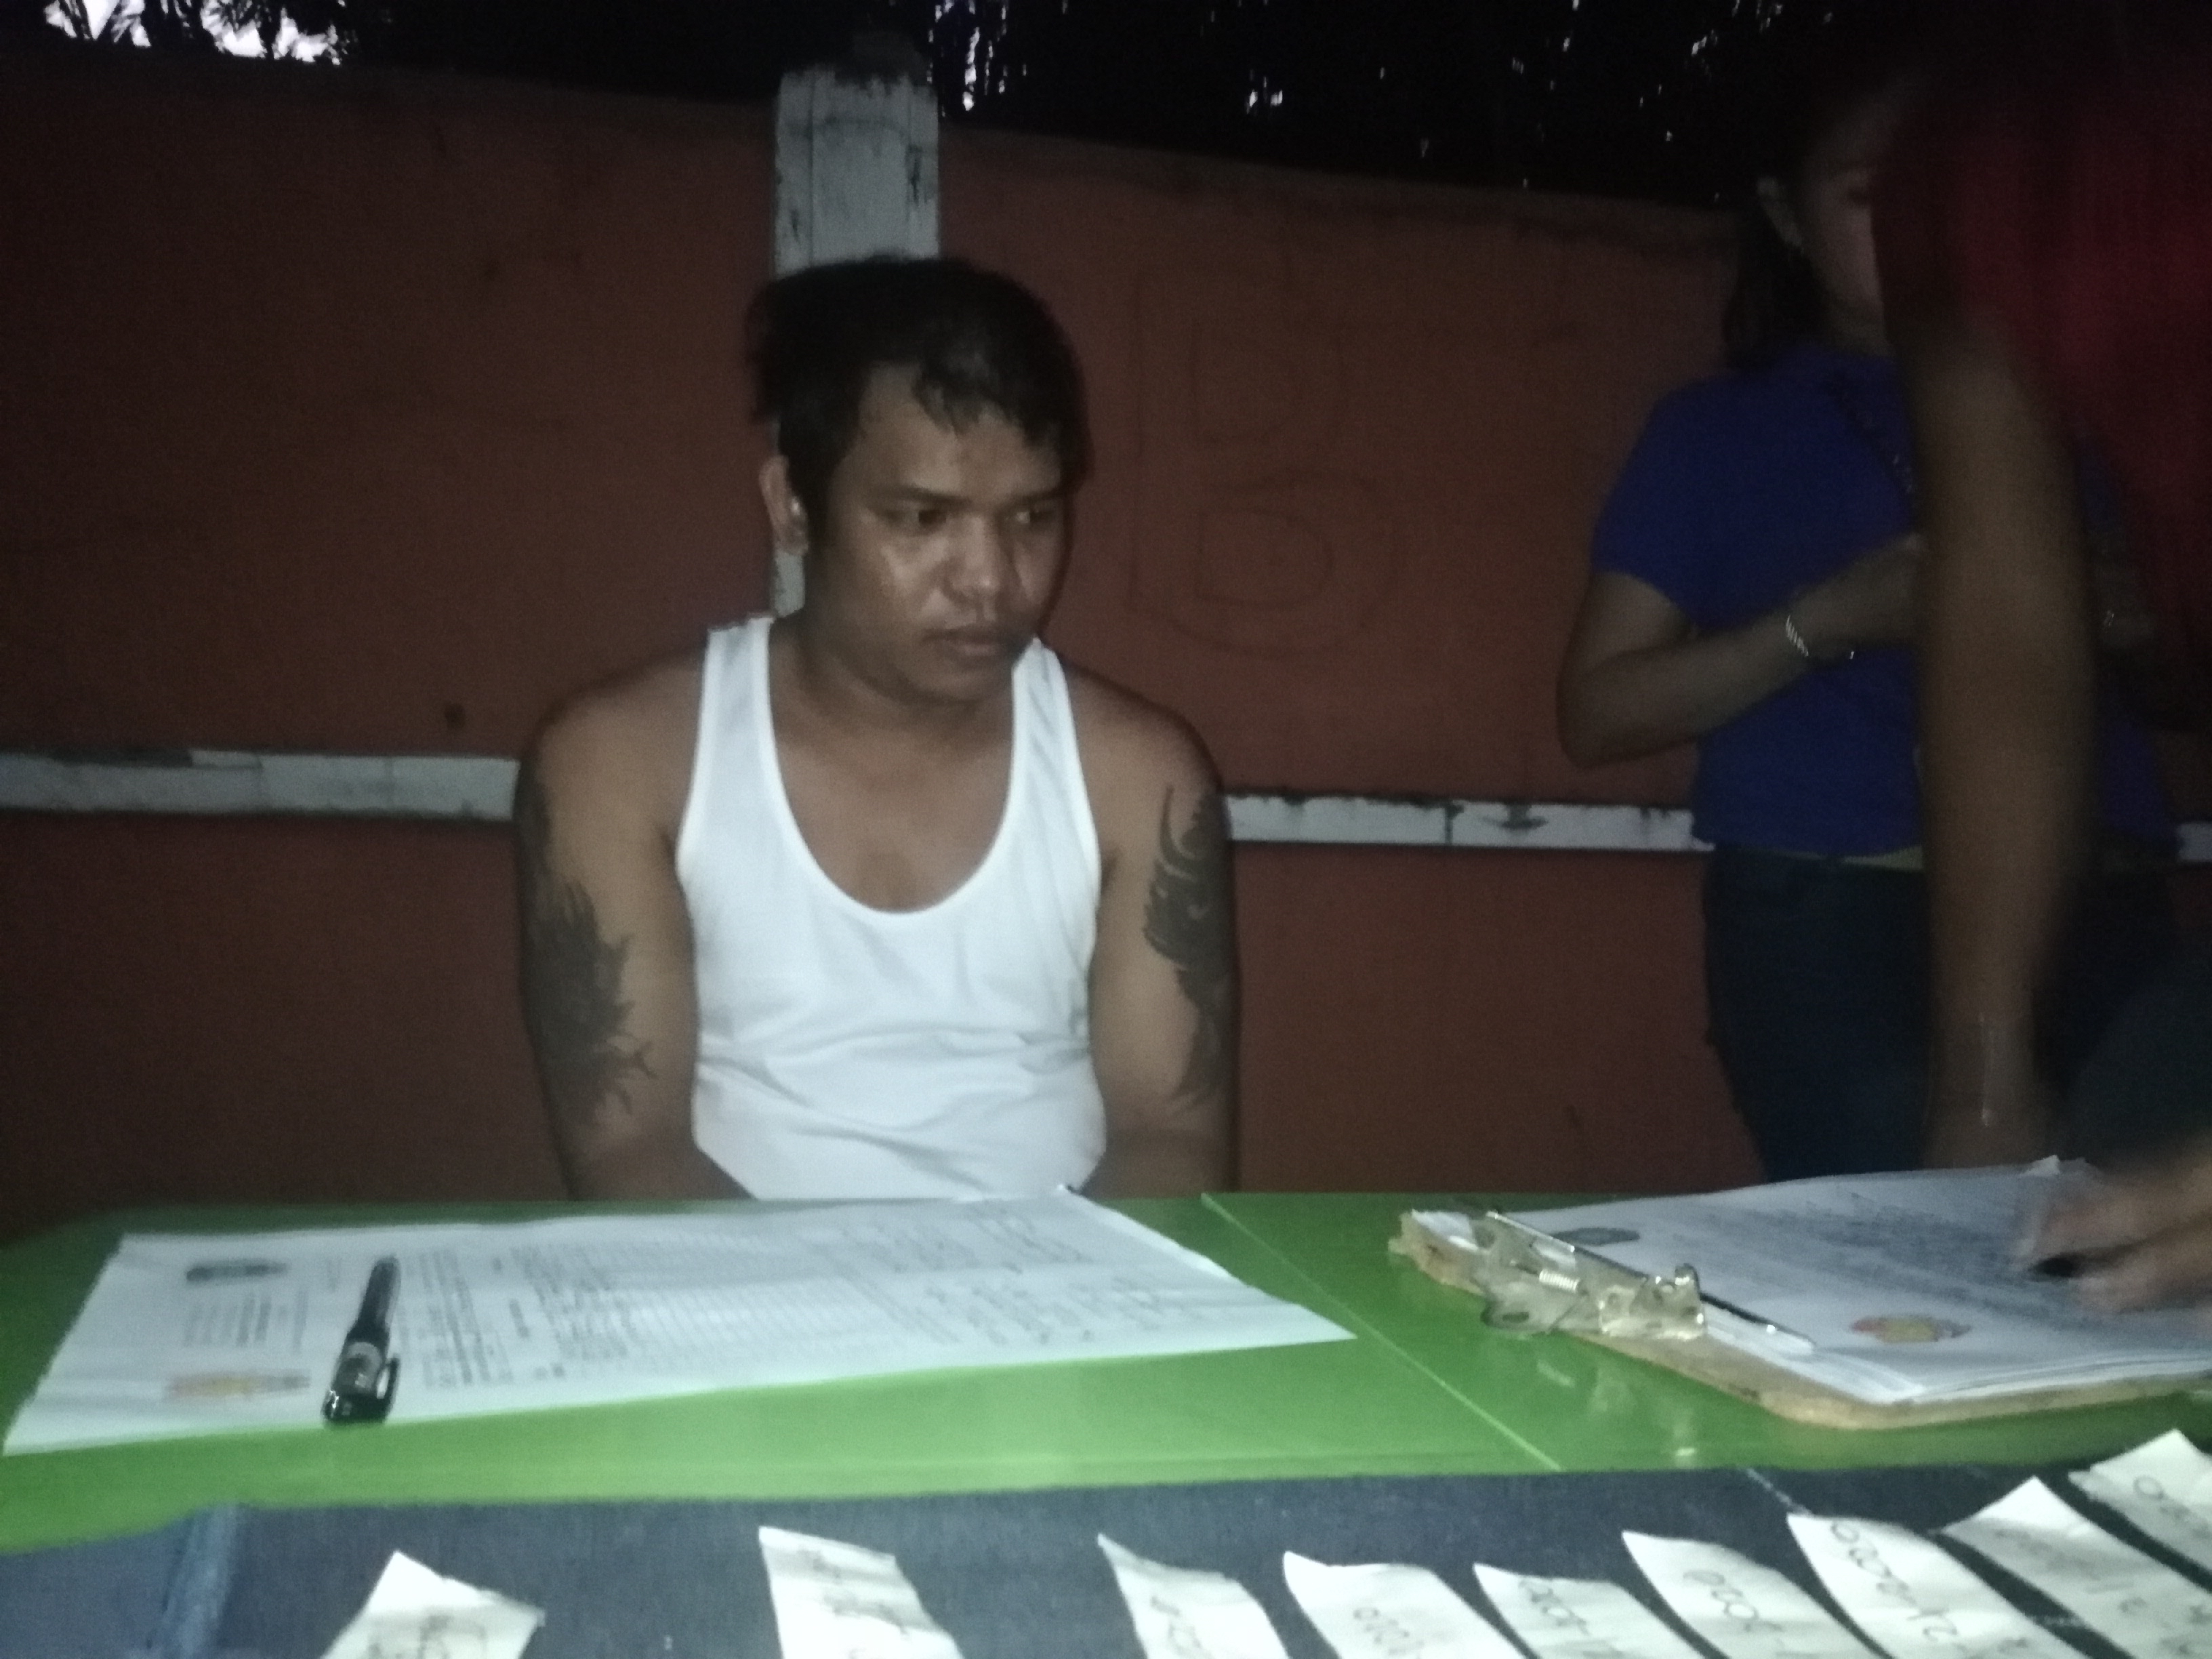 Provincial HVT nabbed in Tagbilaran buy-bust